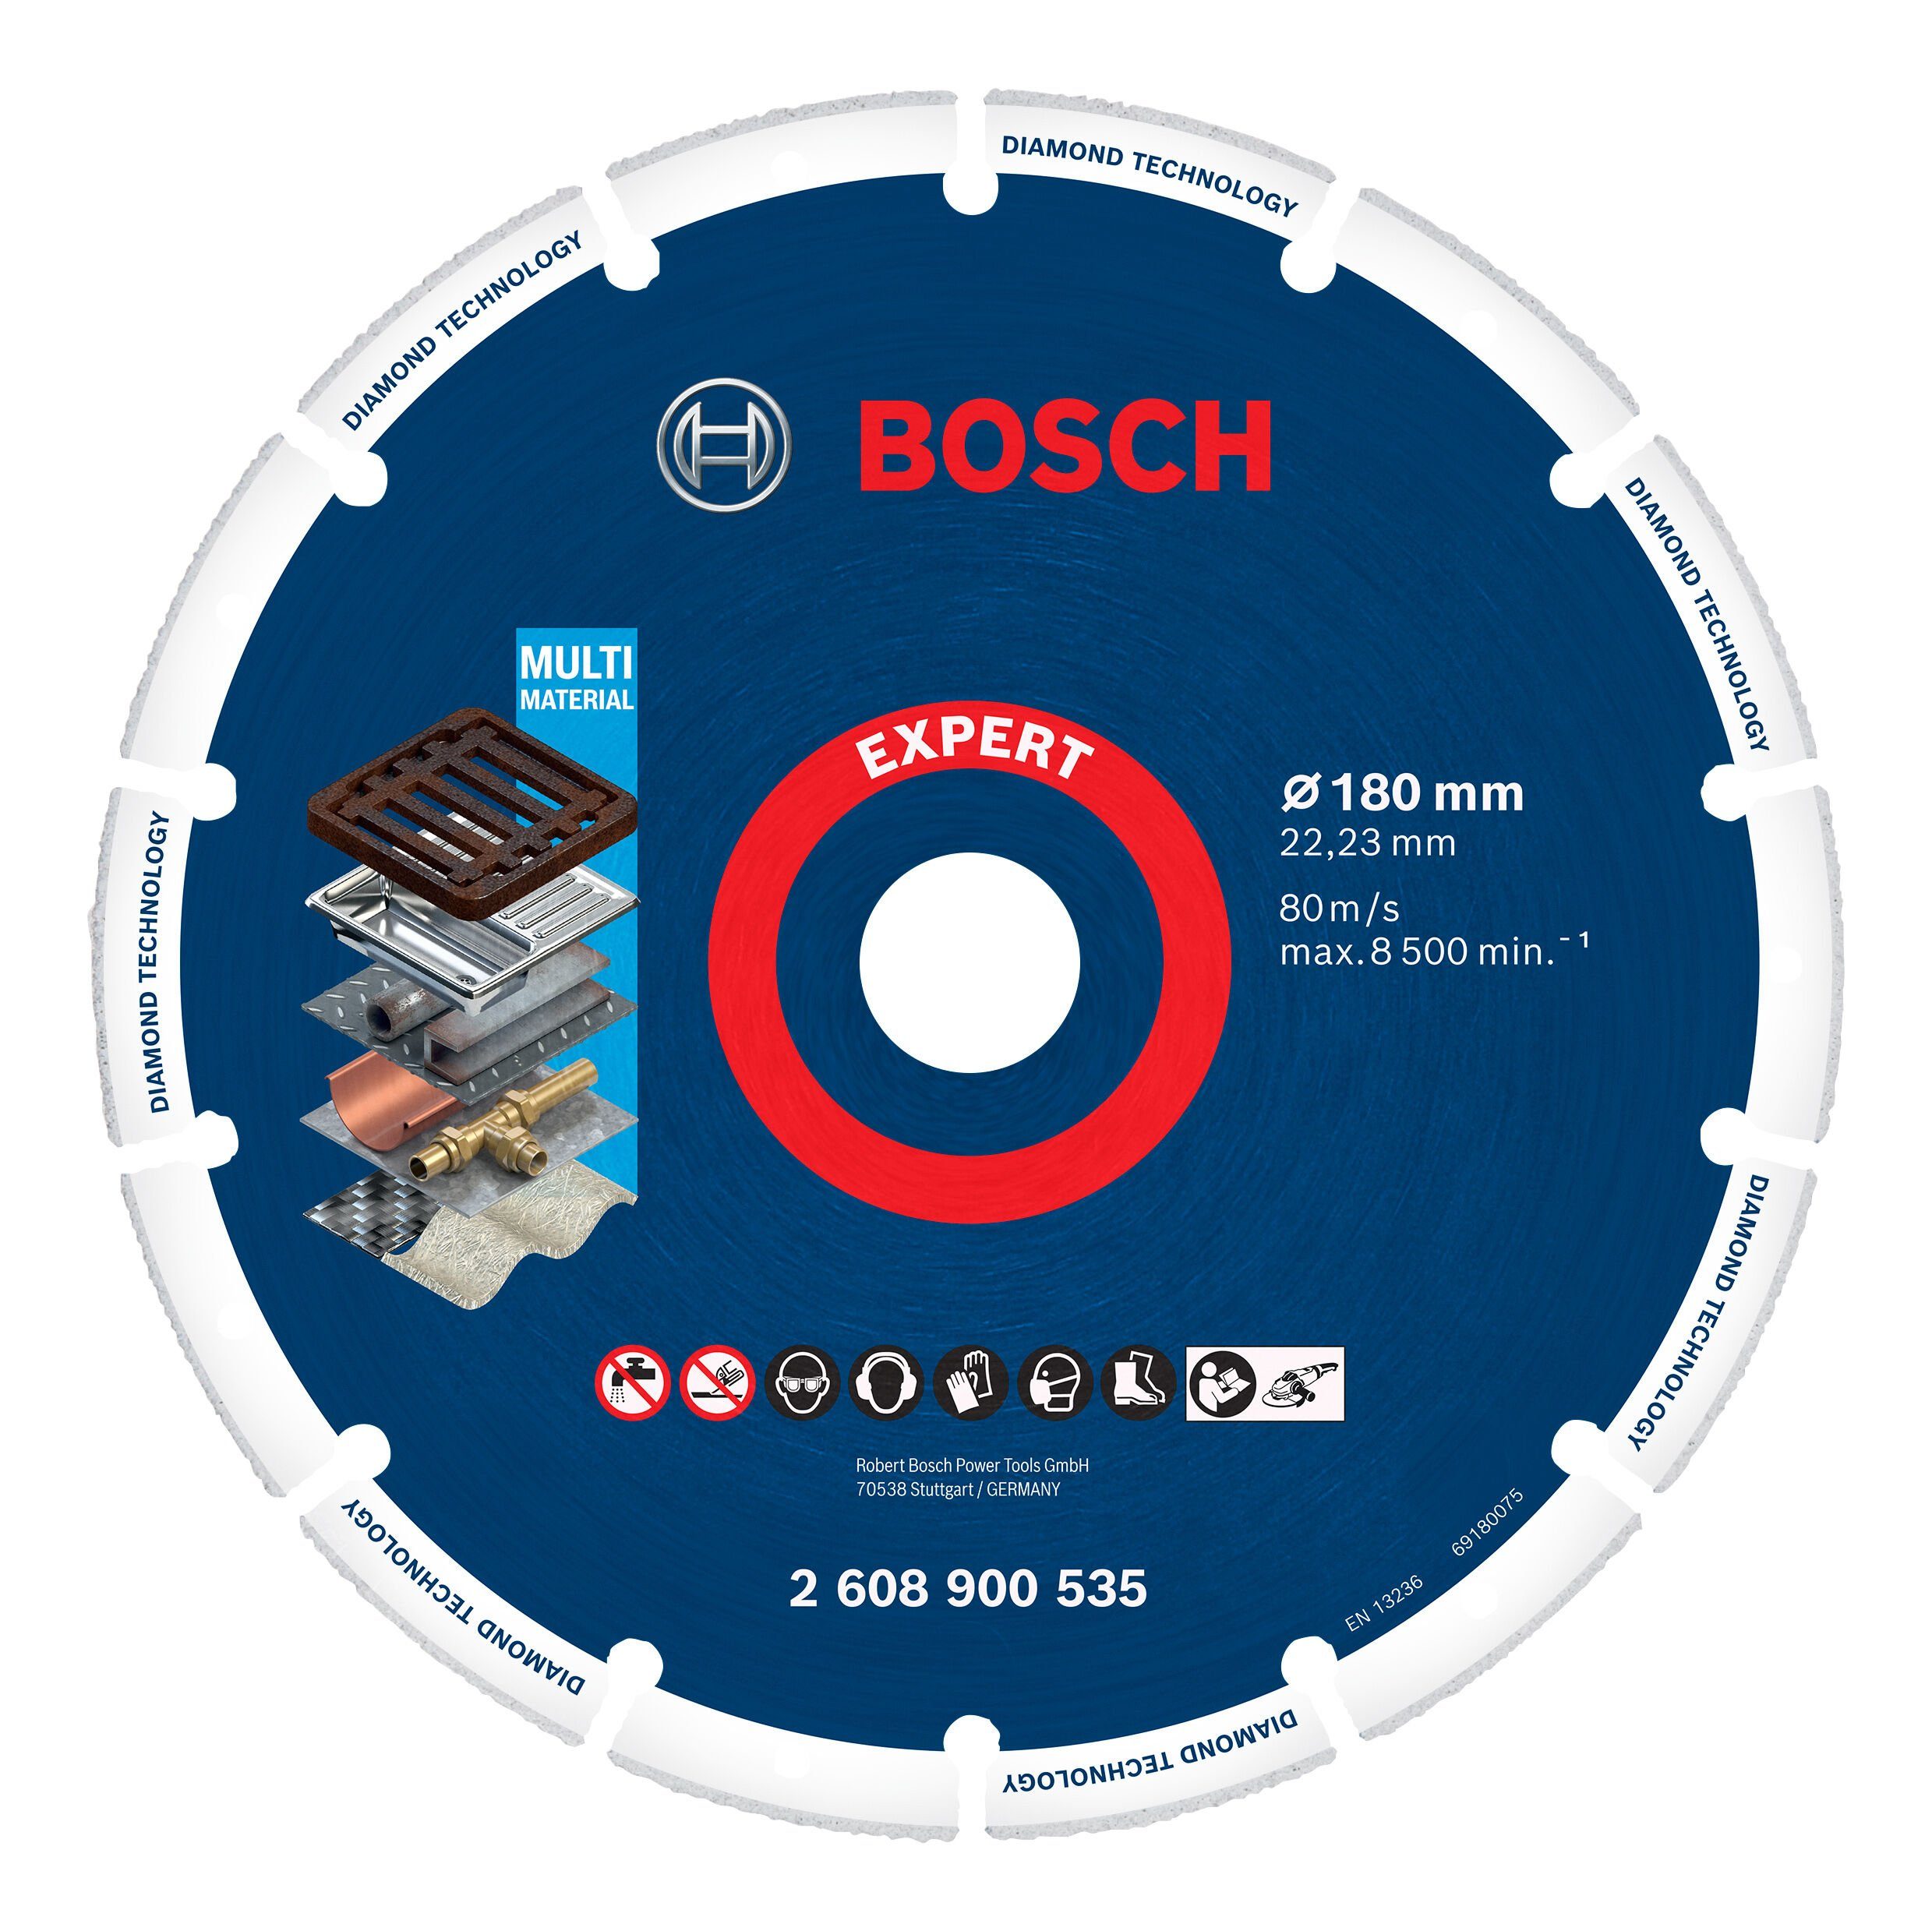 BOSCH Trennscheibe Expert Diamond Metal Wheel, Ø 180 mm, 180 x 22,23 mm